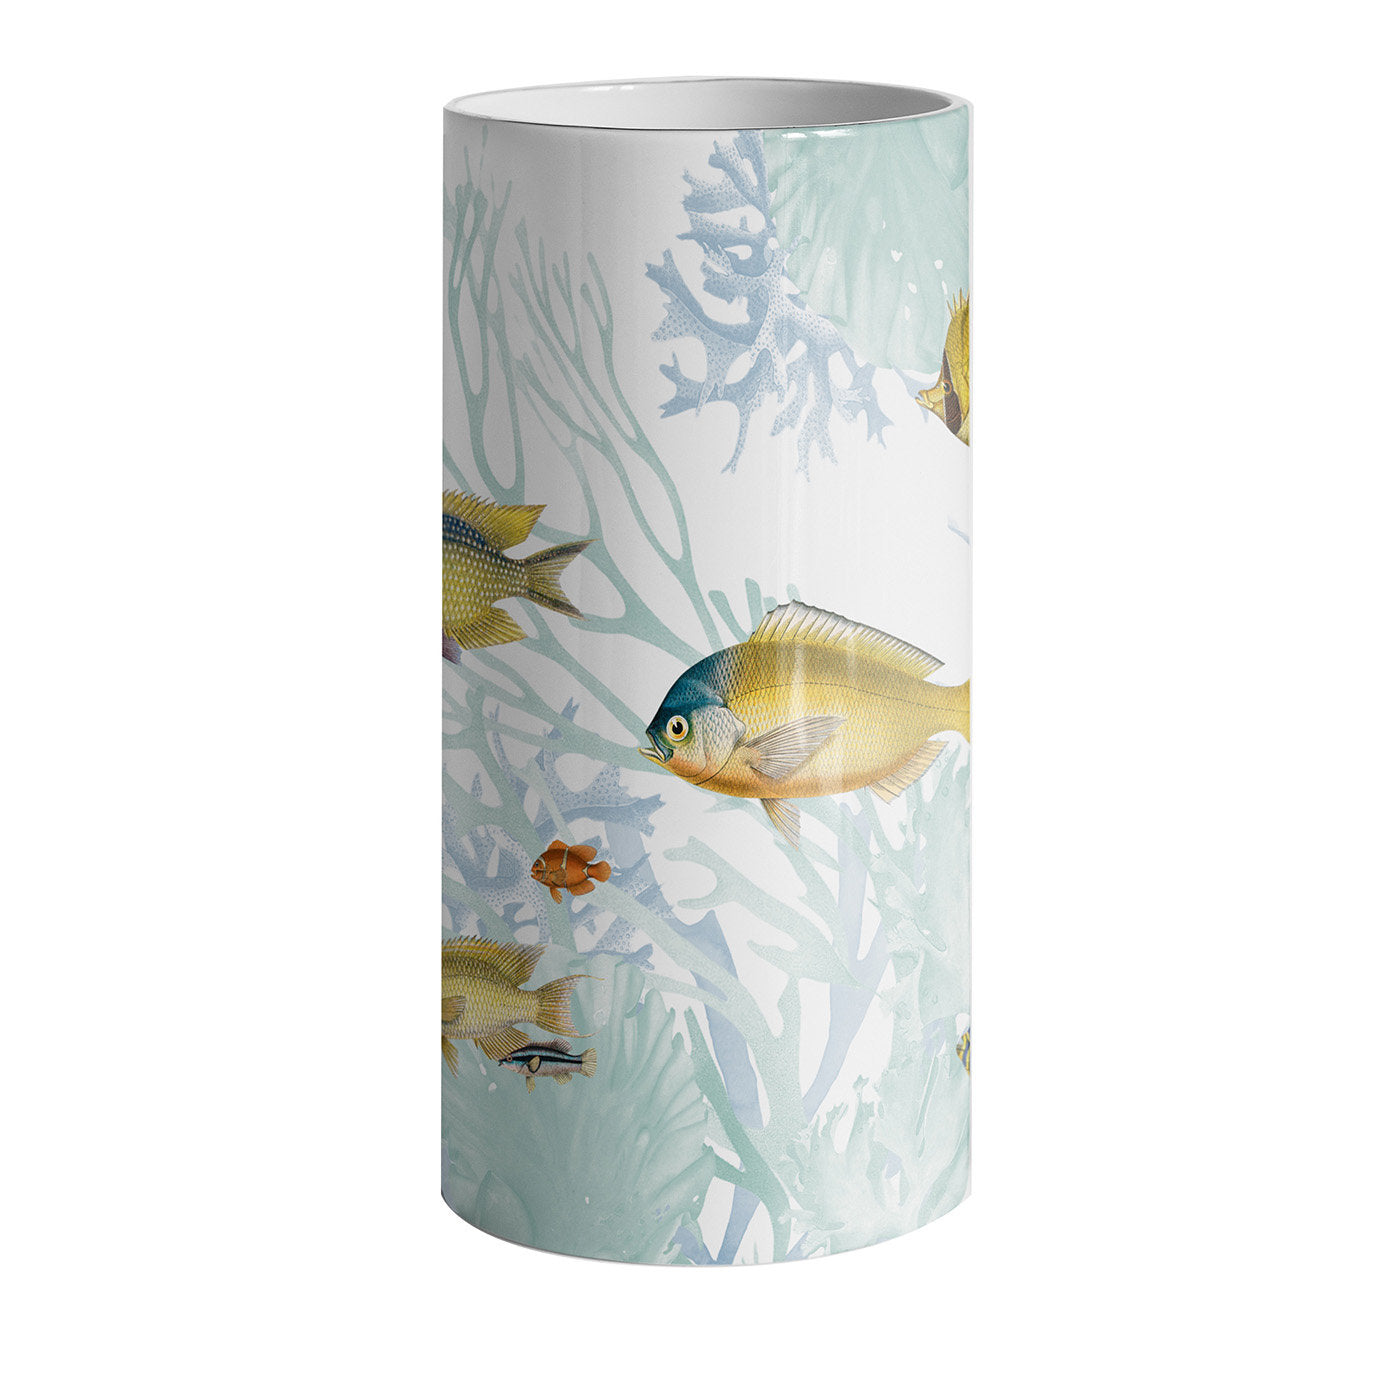 Amami Porzellan Zylindrische Vase mit tropischen Fischen #1 - Hauptansicht